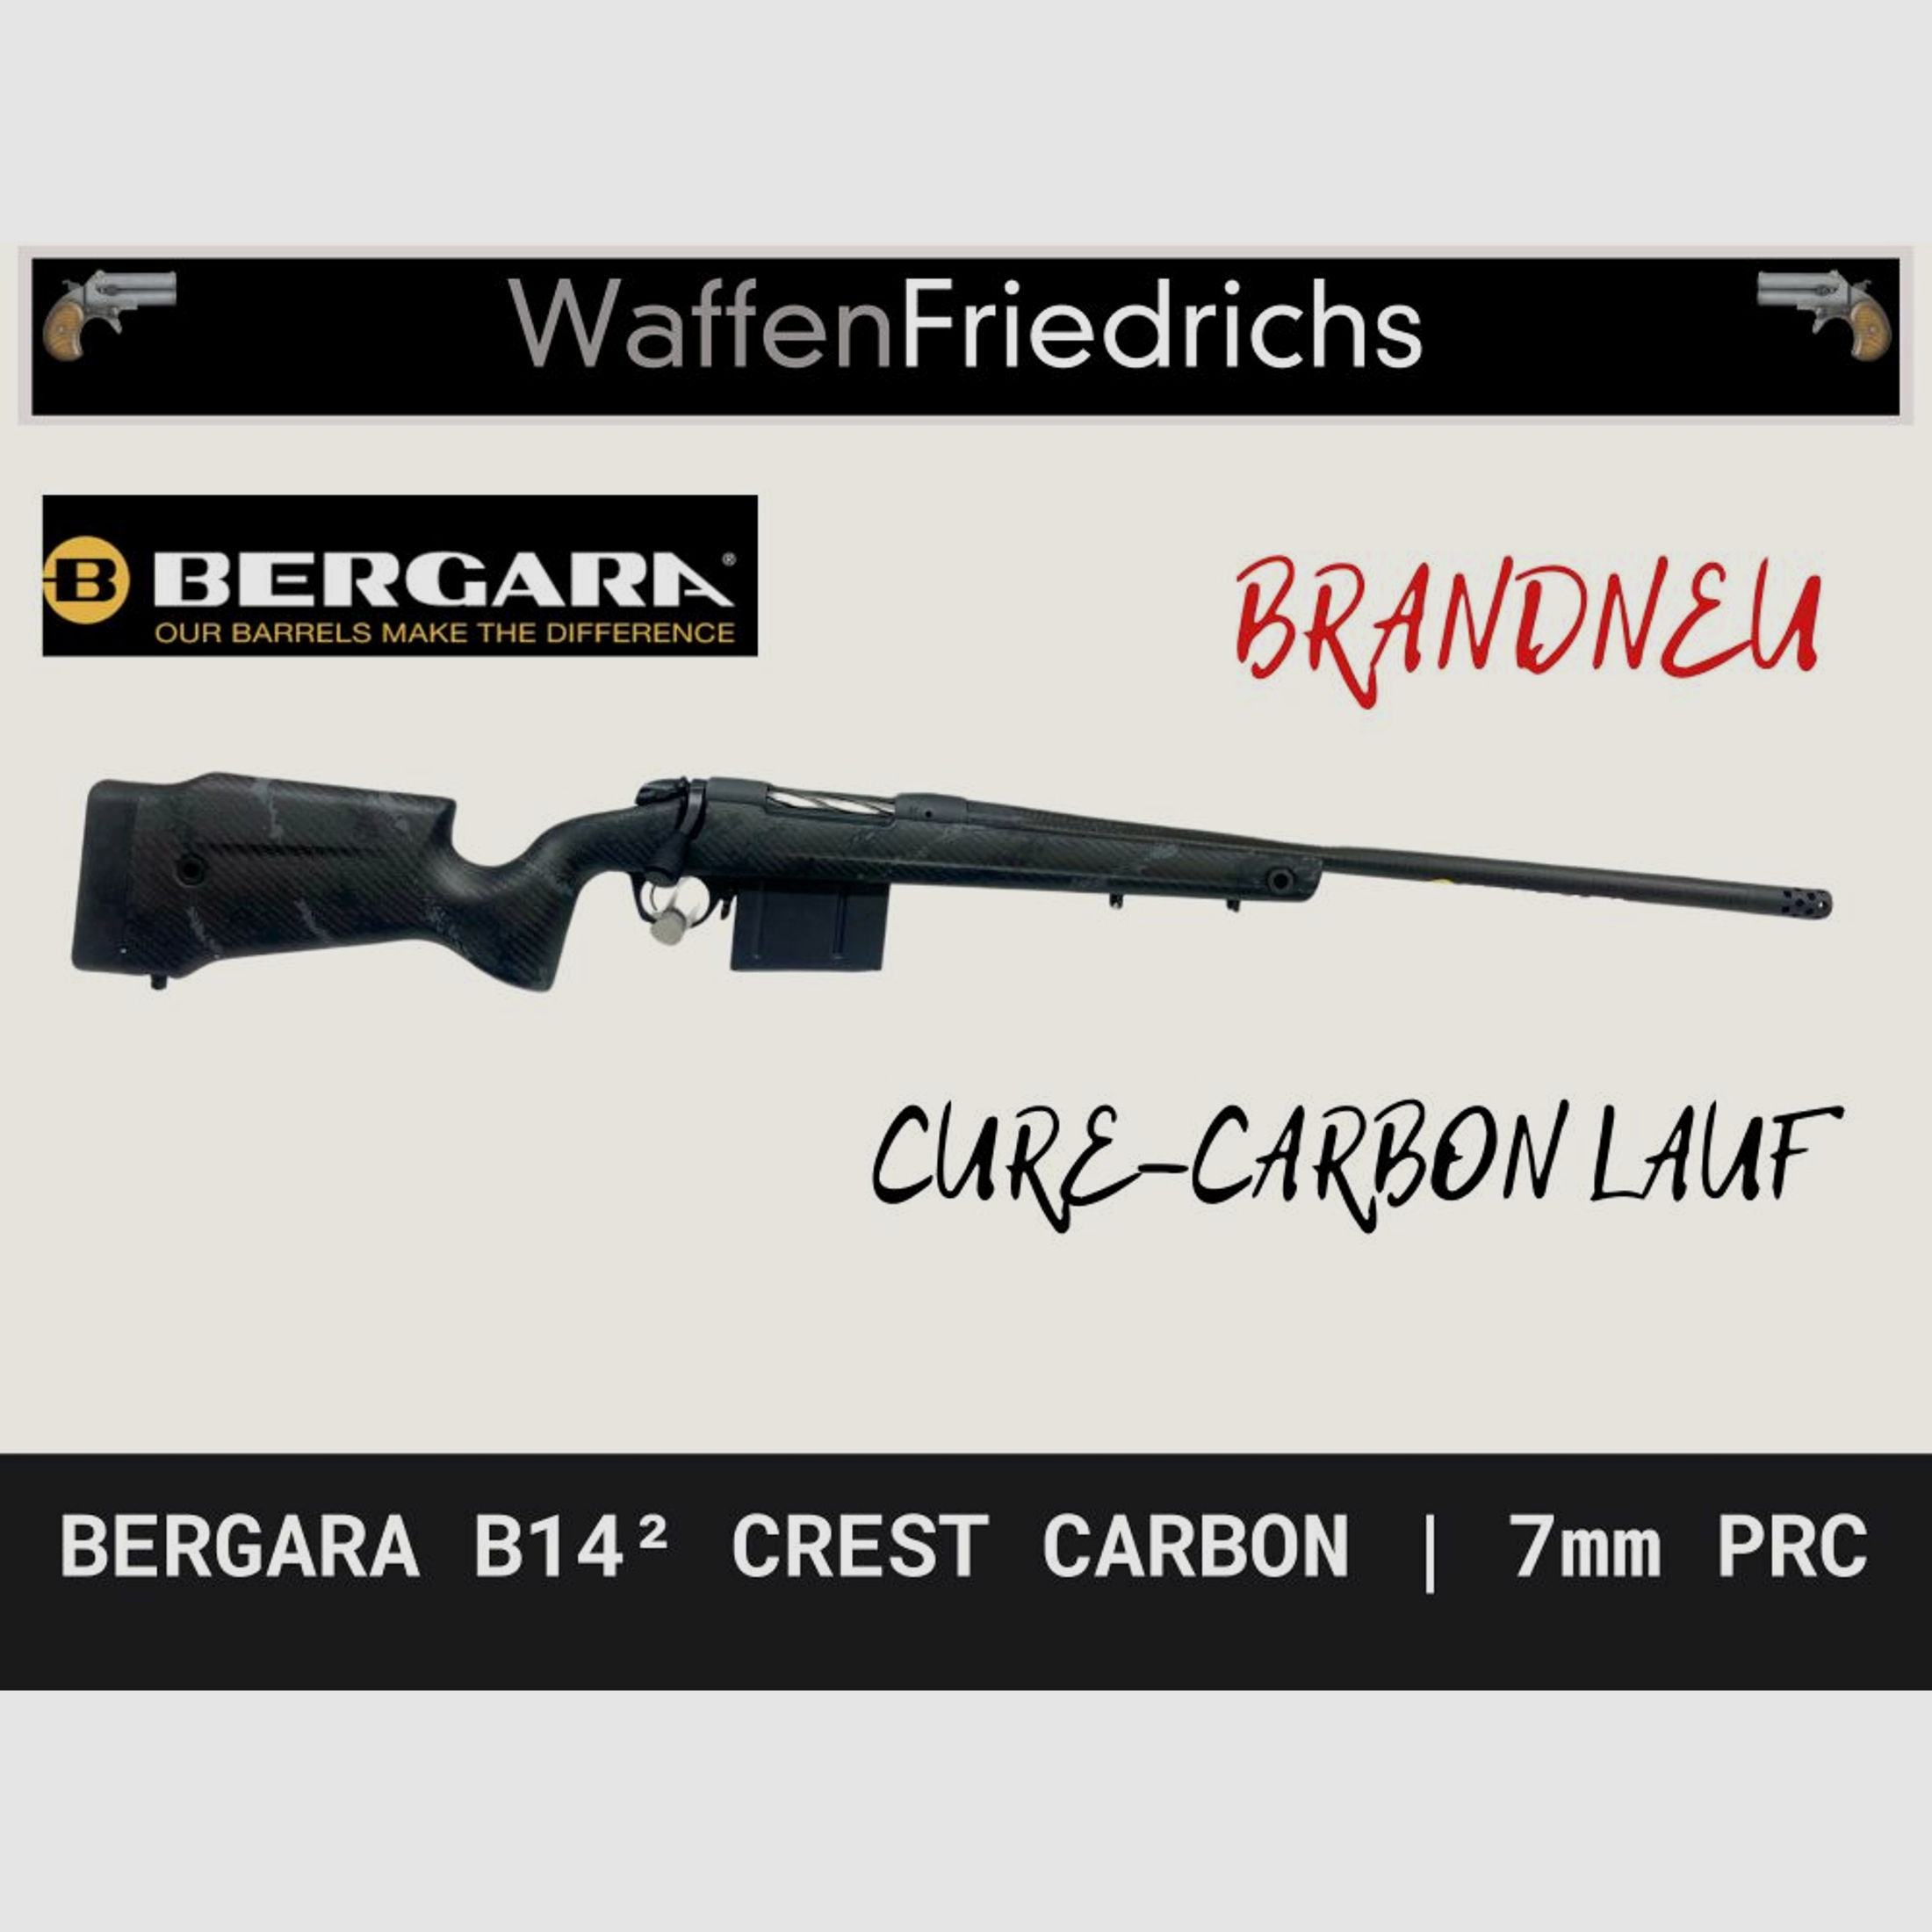 Bergara	 B14² Crest Carbon mit Carbonlauf und Carbonschaft - Waffen Friedrichs